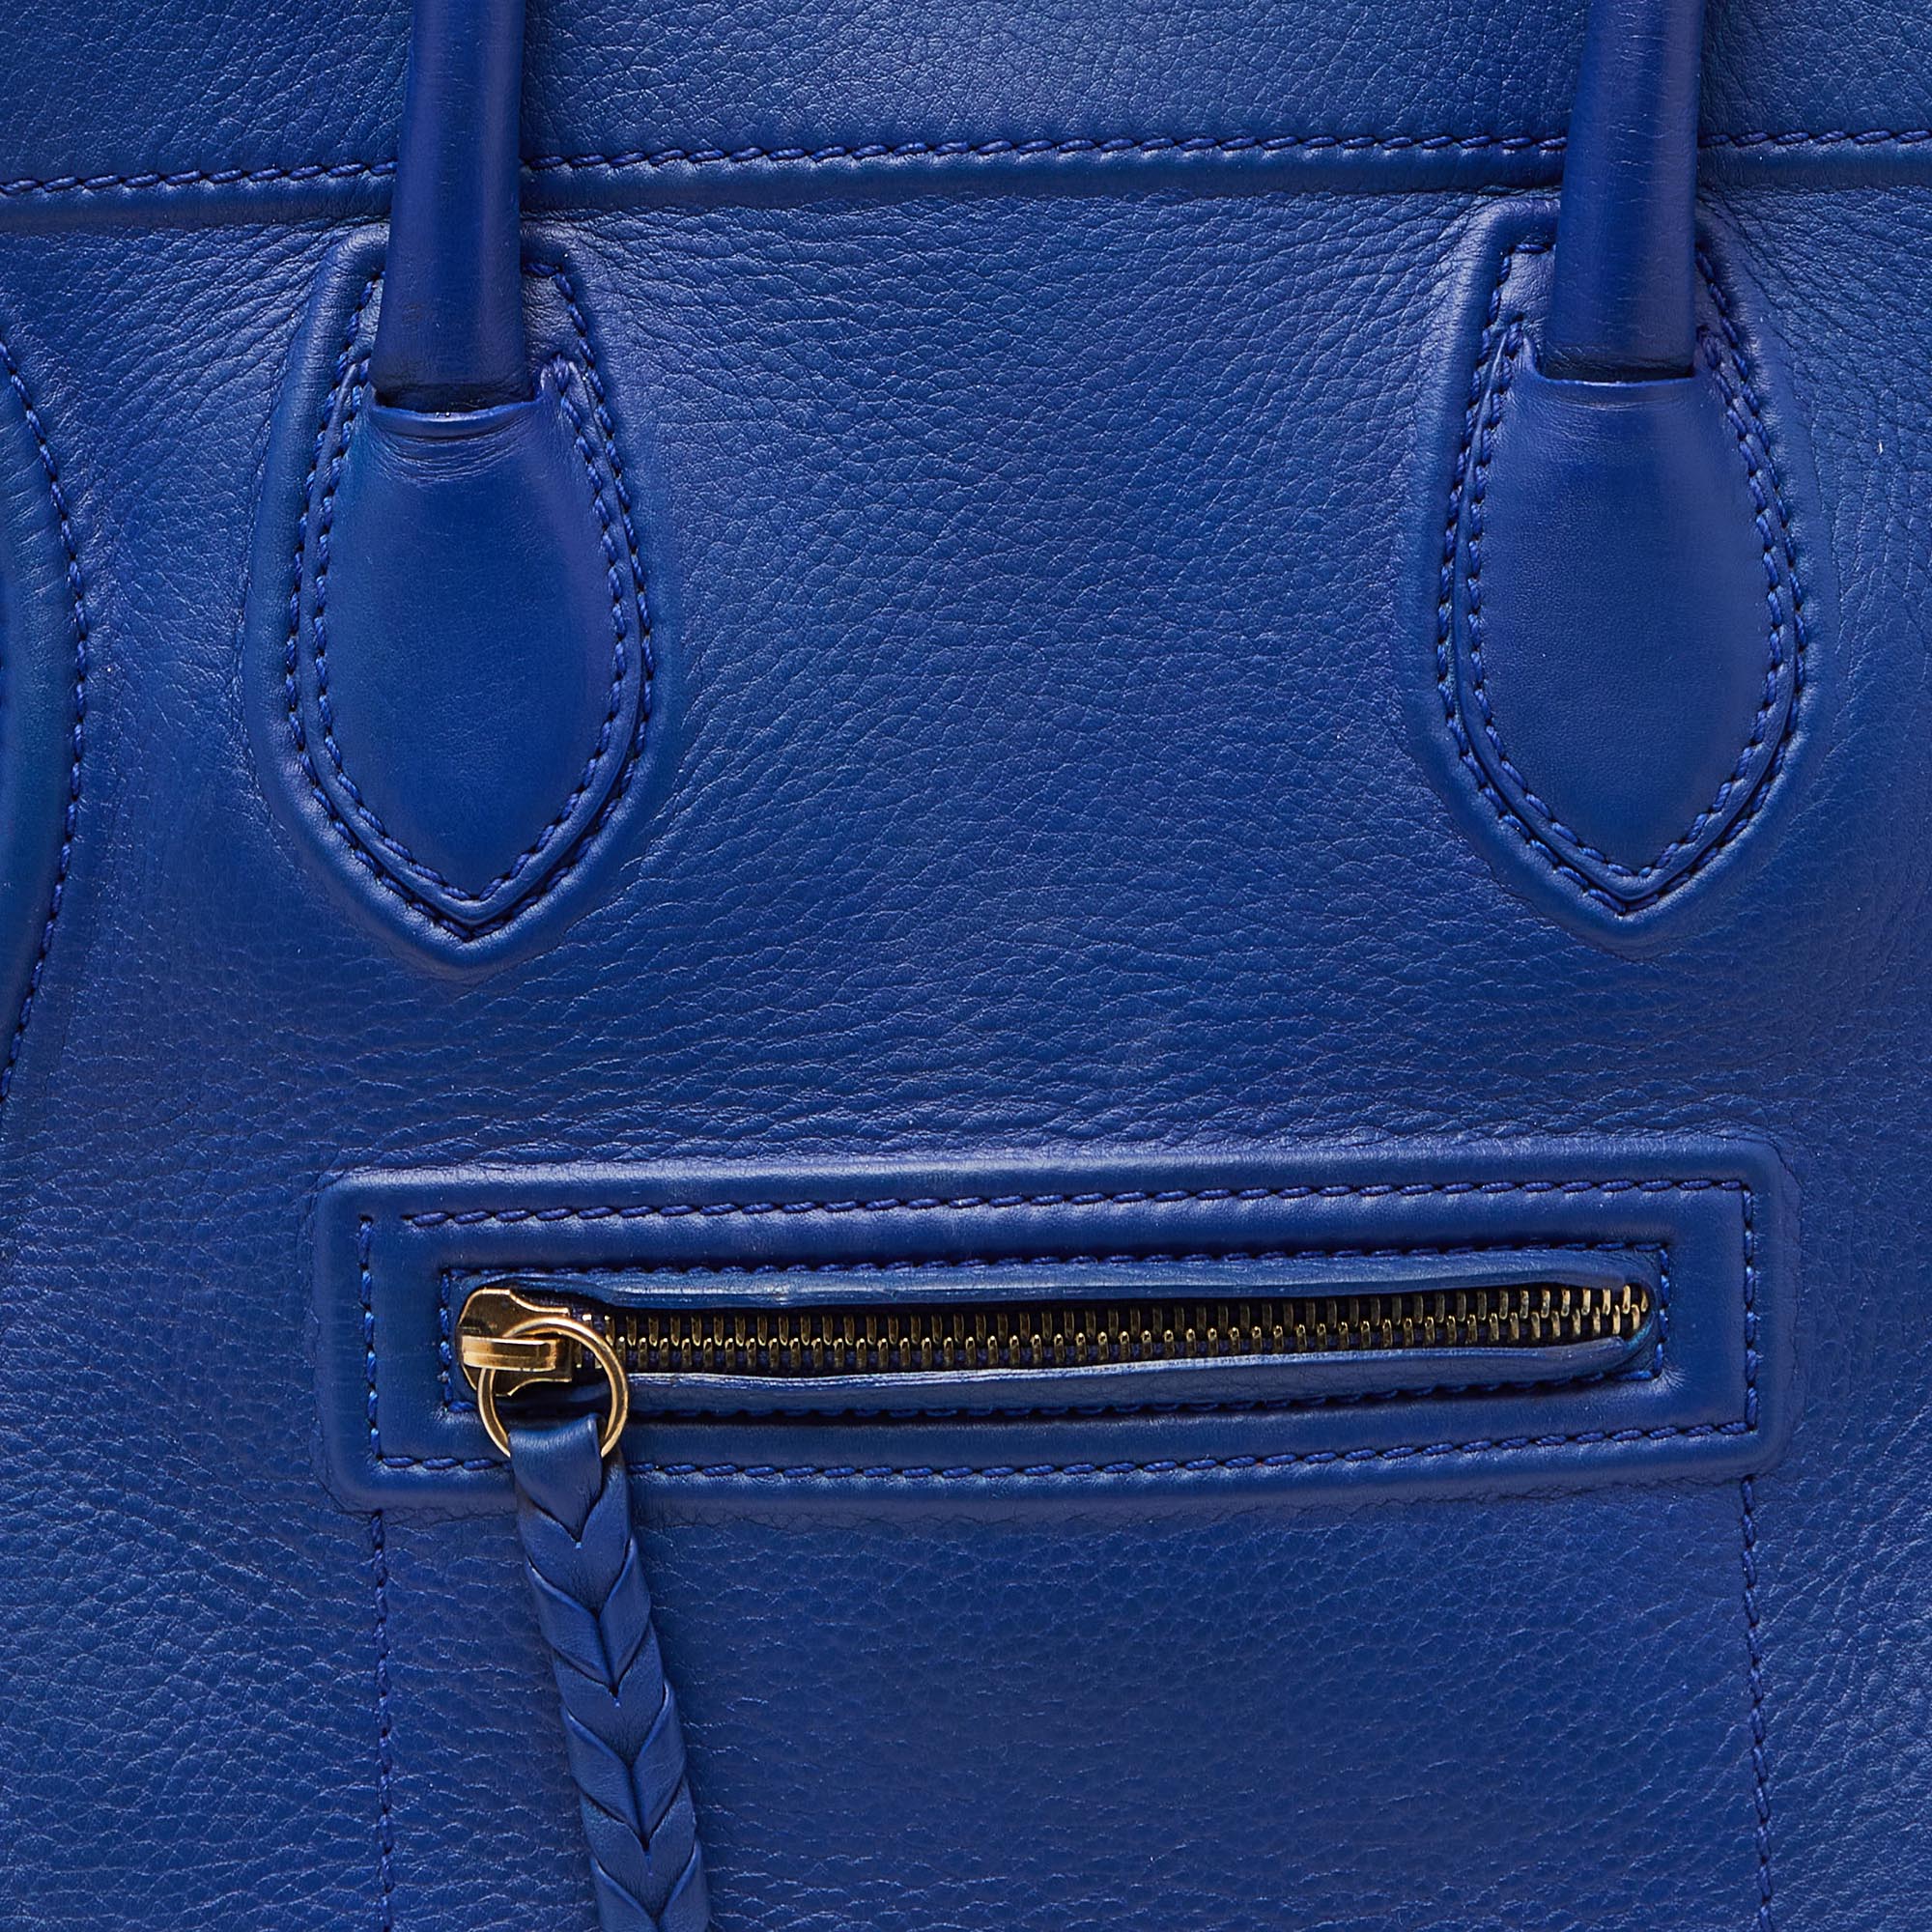 Celine Blue Leather Medium Phantom Luggage Tote